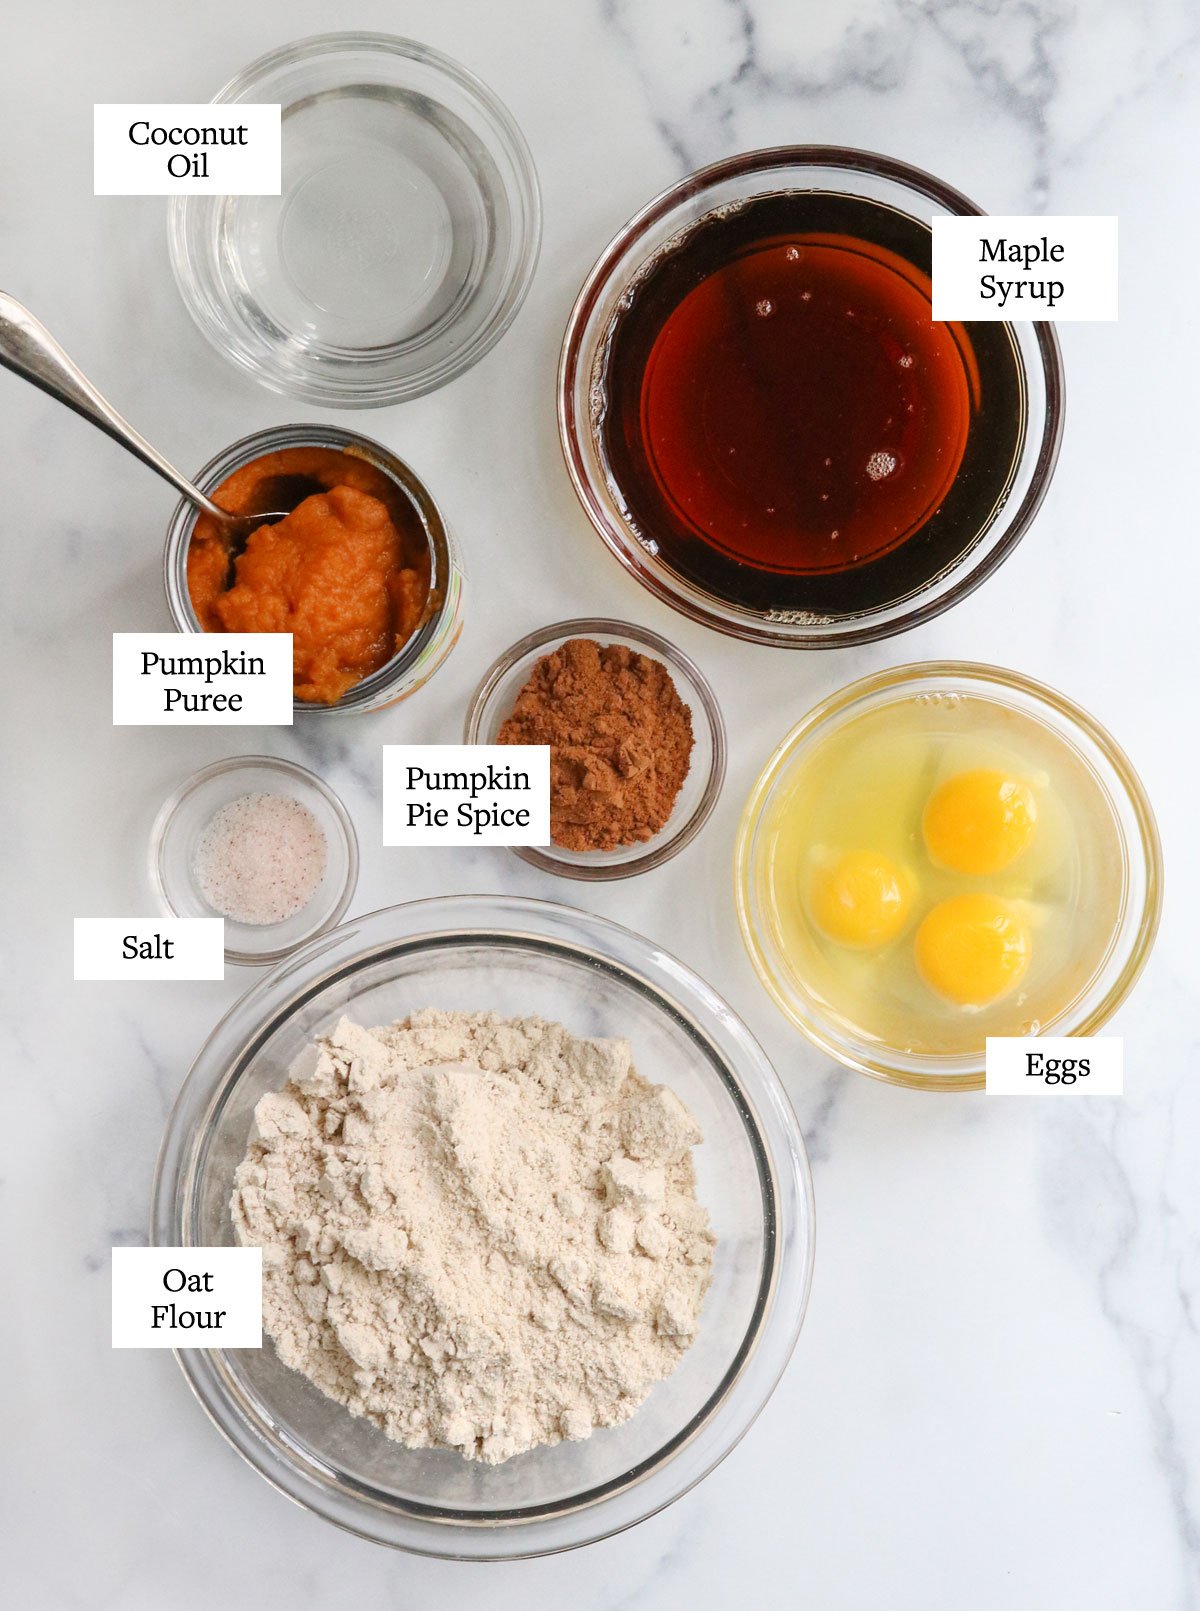 oat flour pumpkin bread ingredients in glass bowls